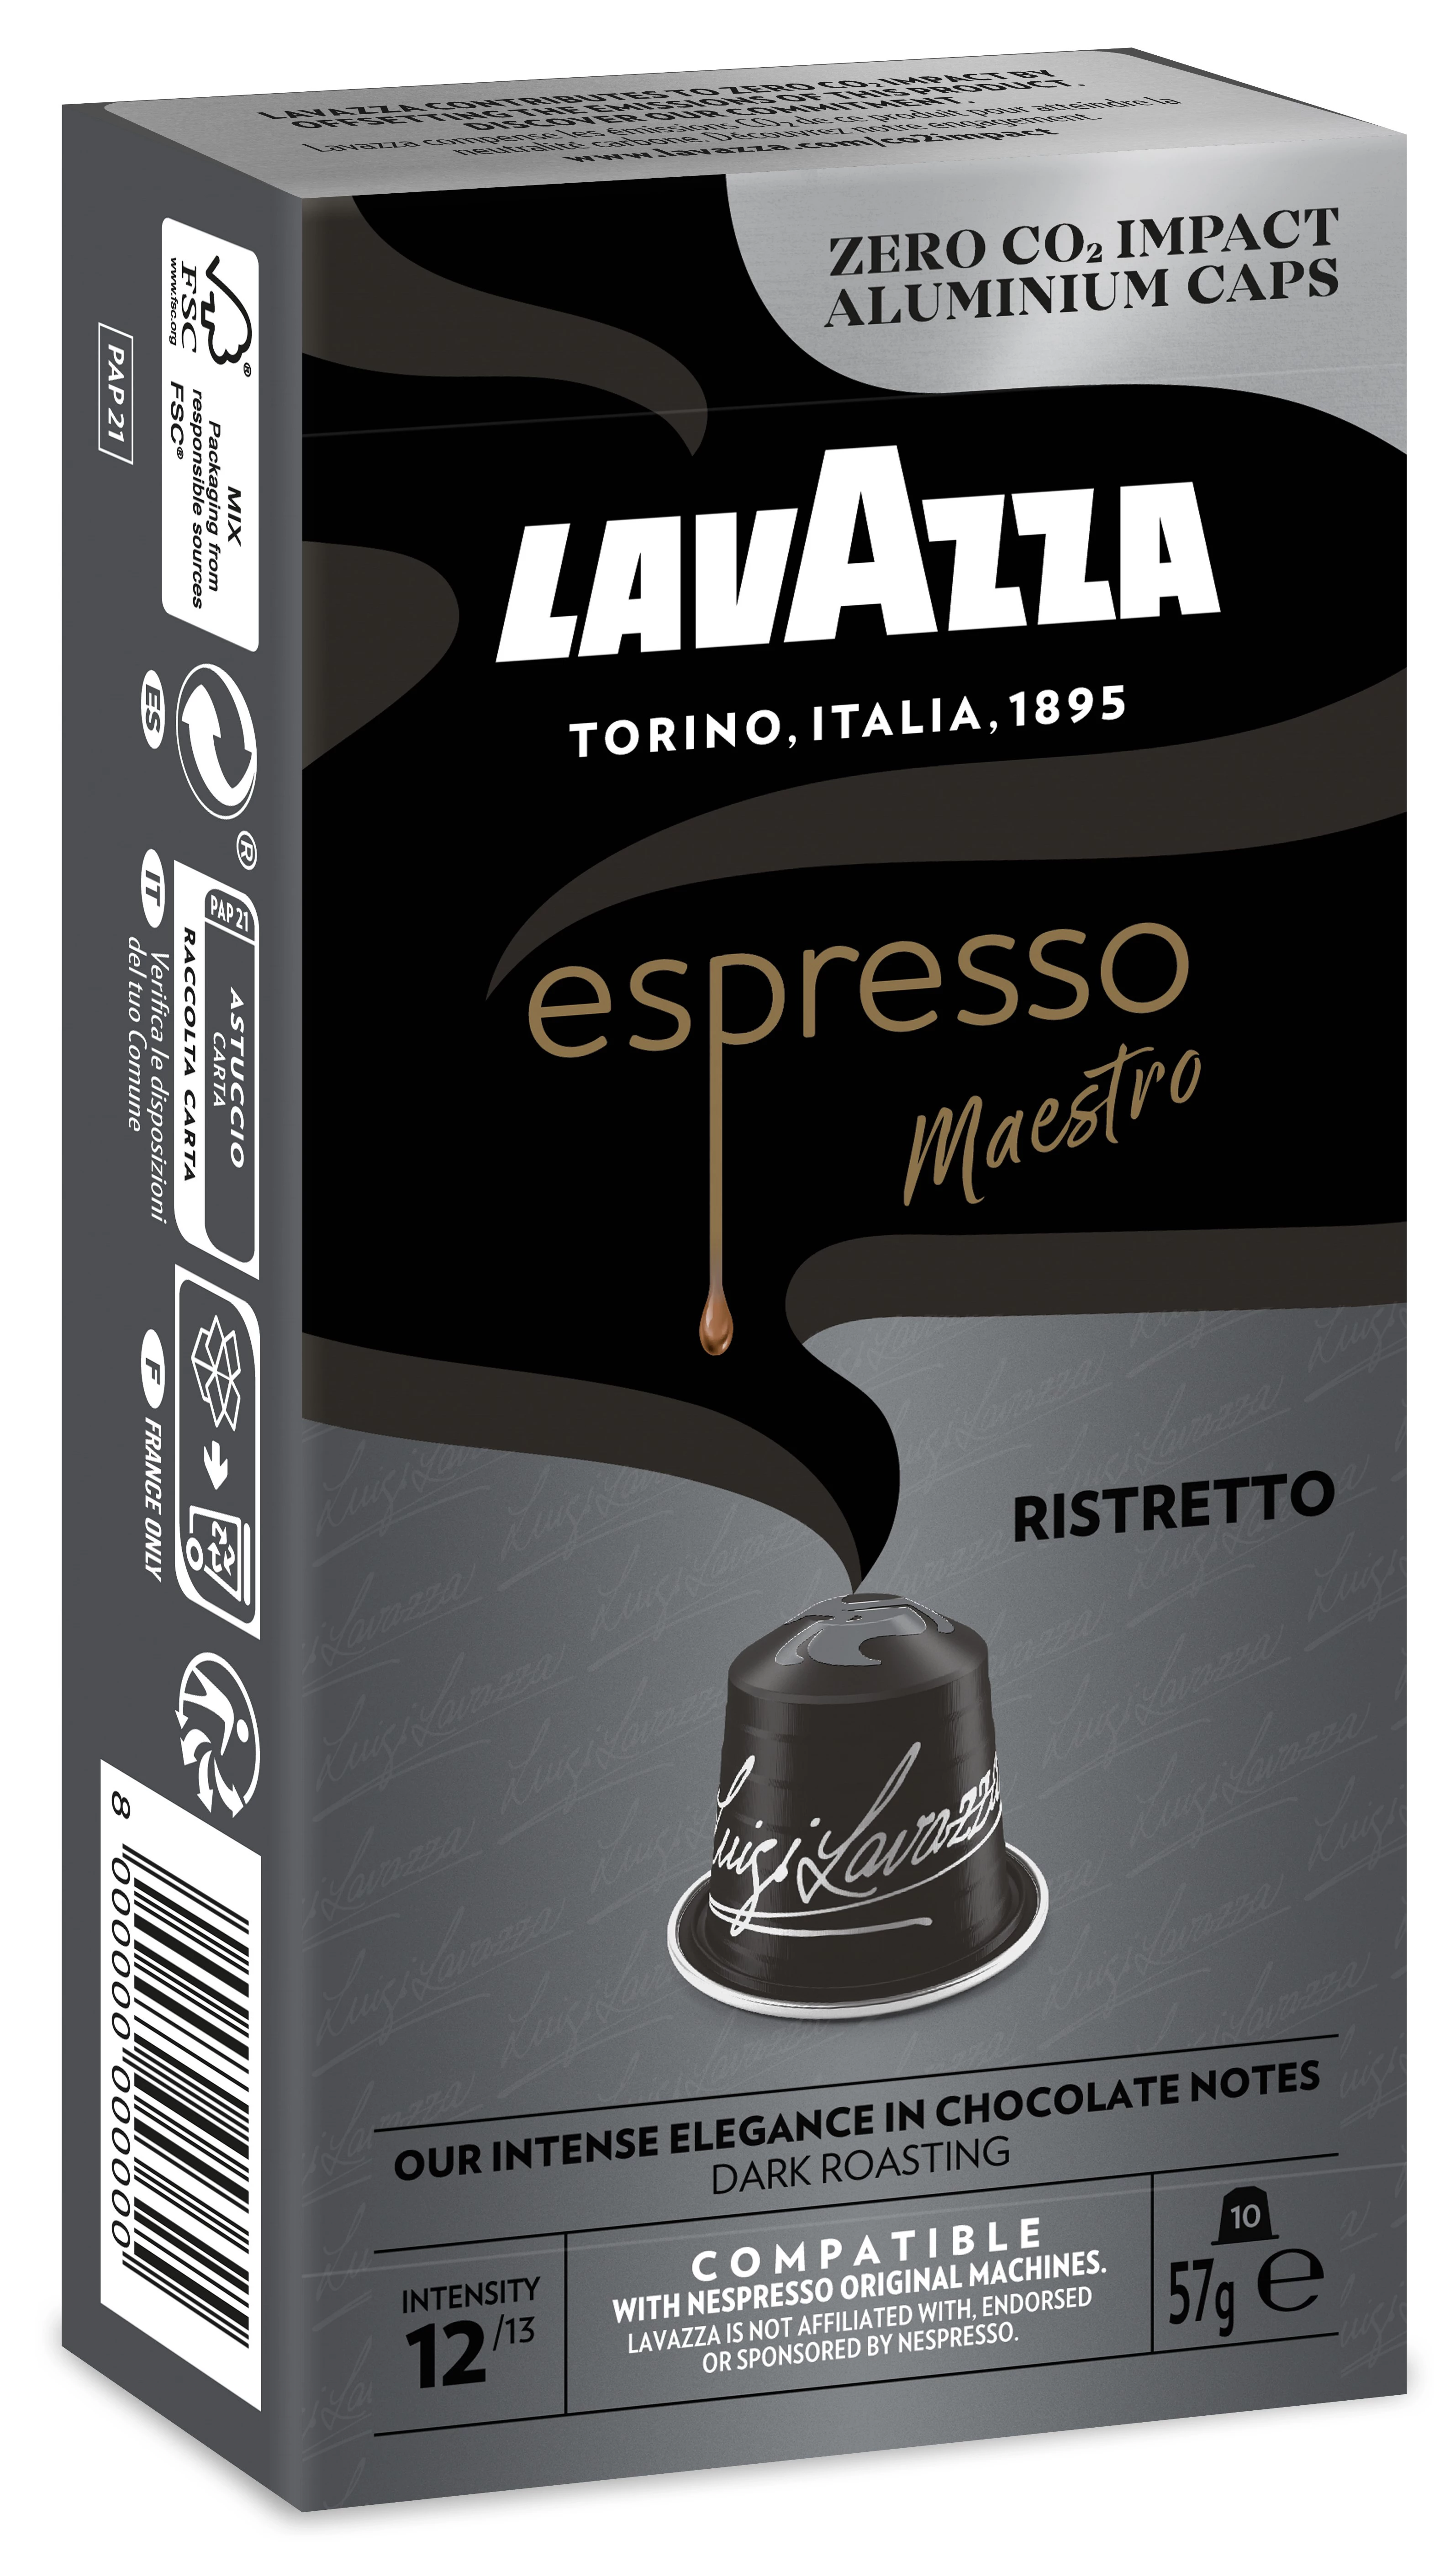 咖啡胶囊 X10 铝制 Ristretto 55 克 - LAVAZZA